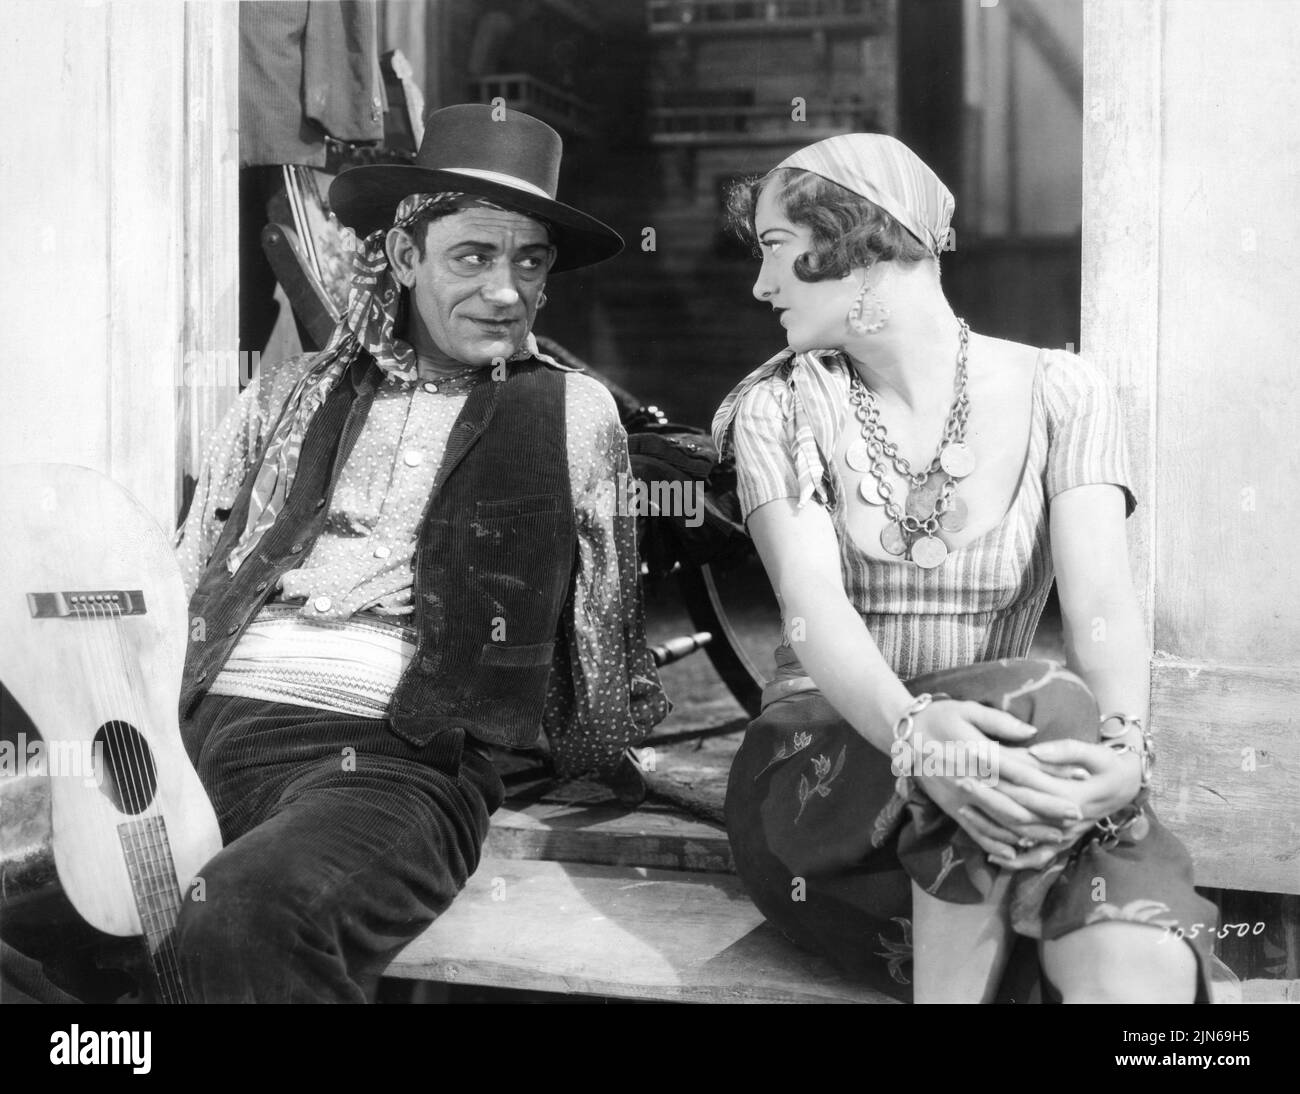 LON CHANEY comme Alonzo l'Armless et JOAN CRAWFORD comme Nanon dans L'INCONNU 1927 réalisateur / histoire TSD BROWNING Metro Goldwyn Mayer Banque D'Images